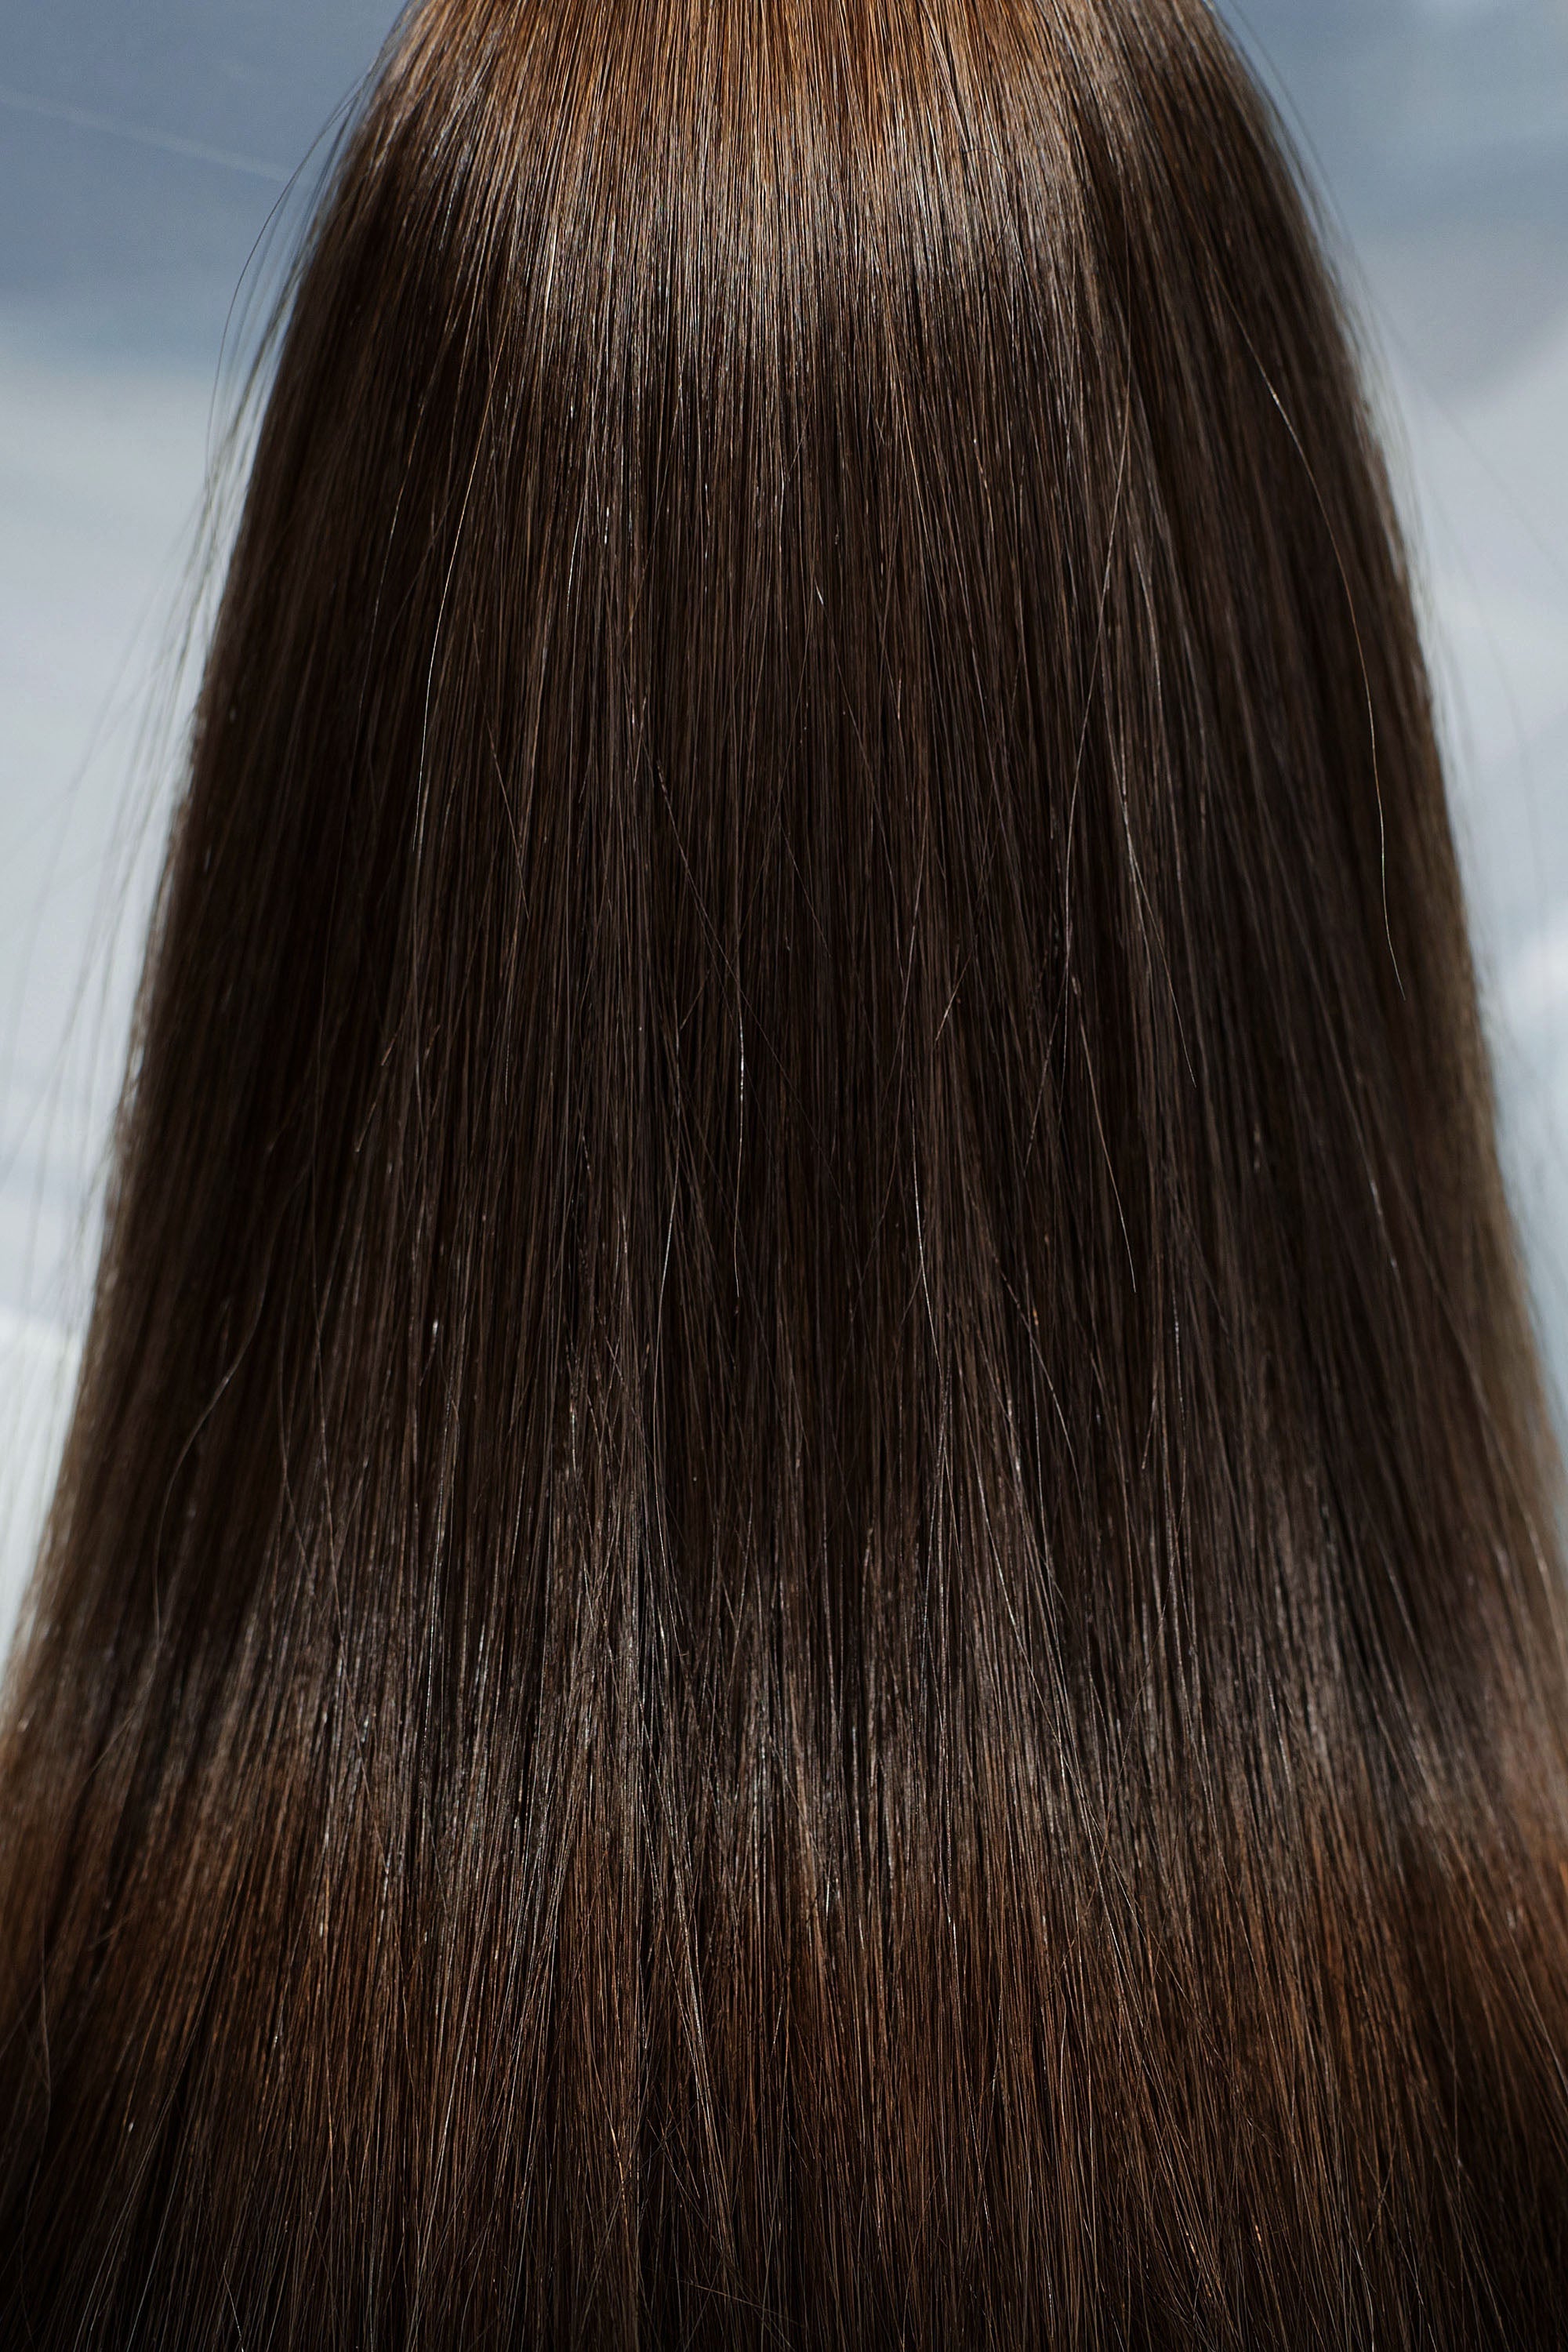 Behair professional Bulk hair "Premium" 16" (40cm) Natural Straight Light Brown #4 - 25g hair extensions